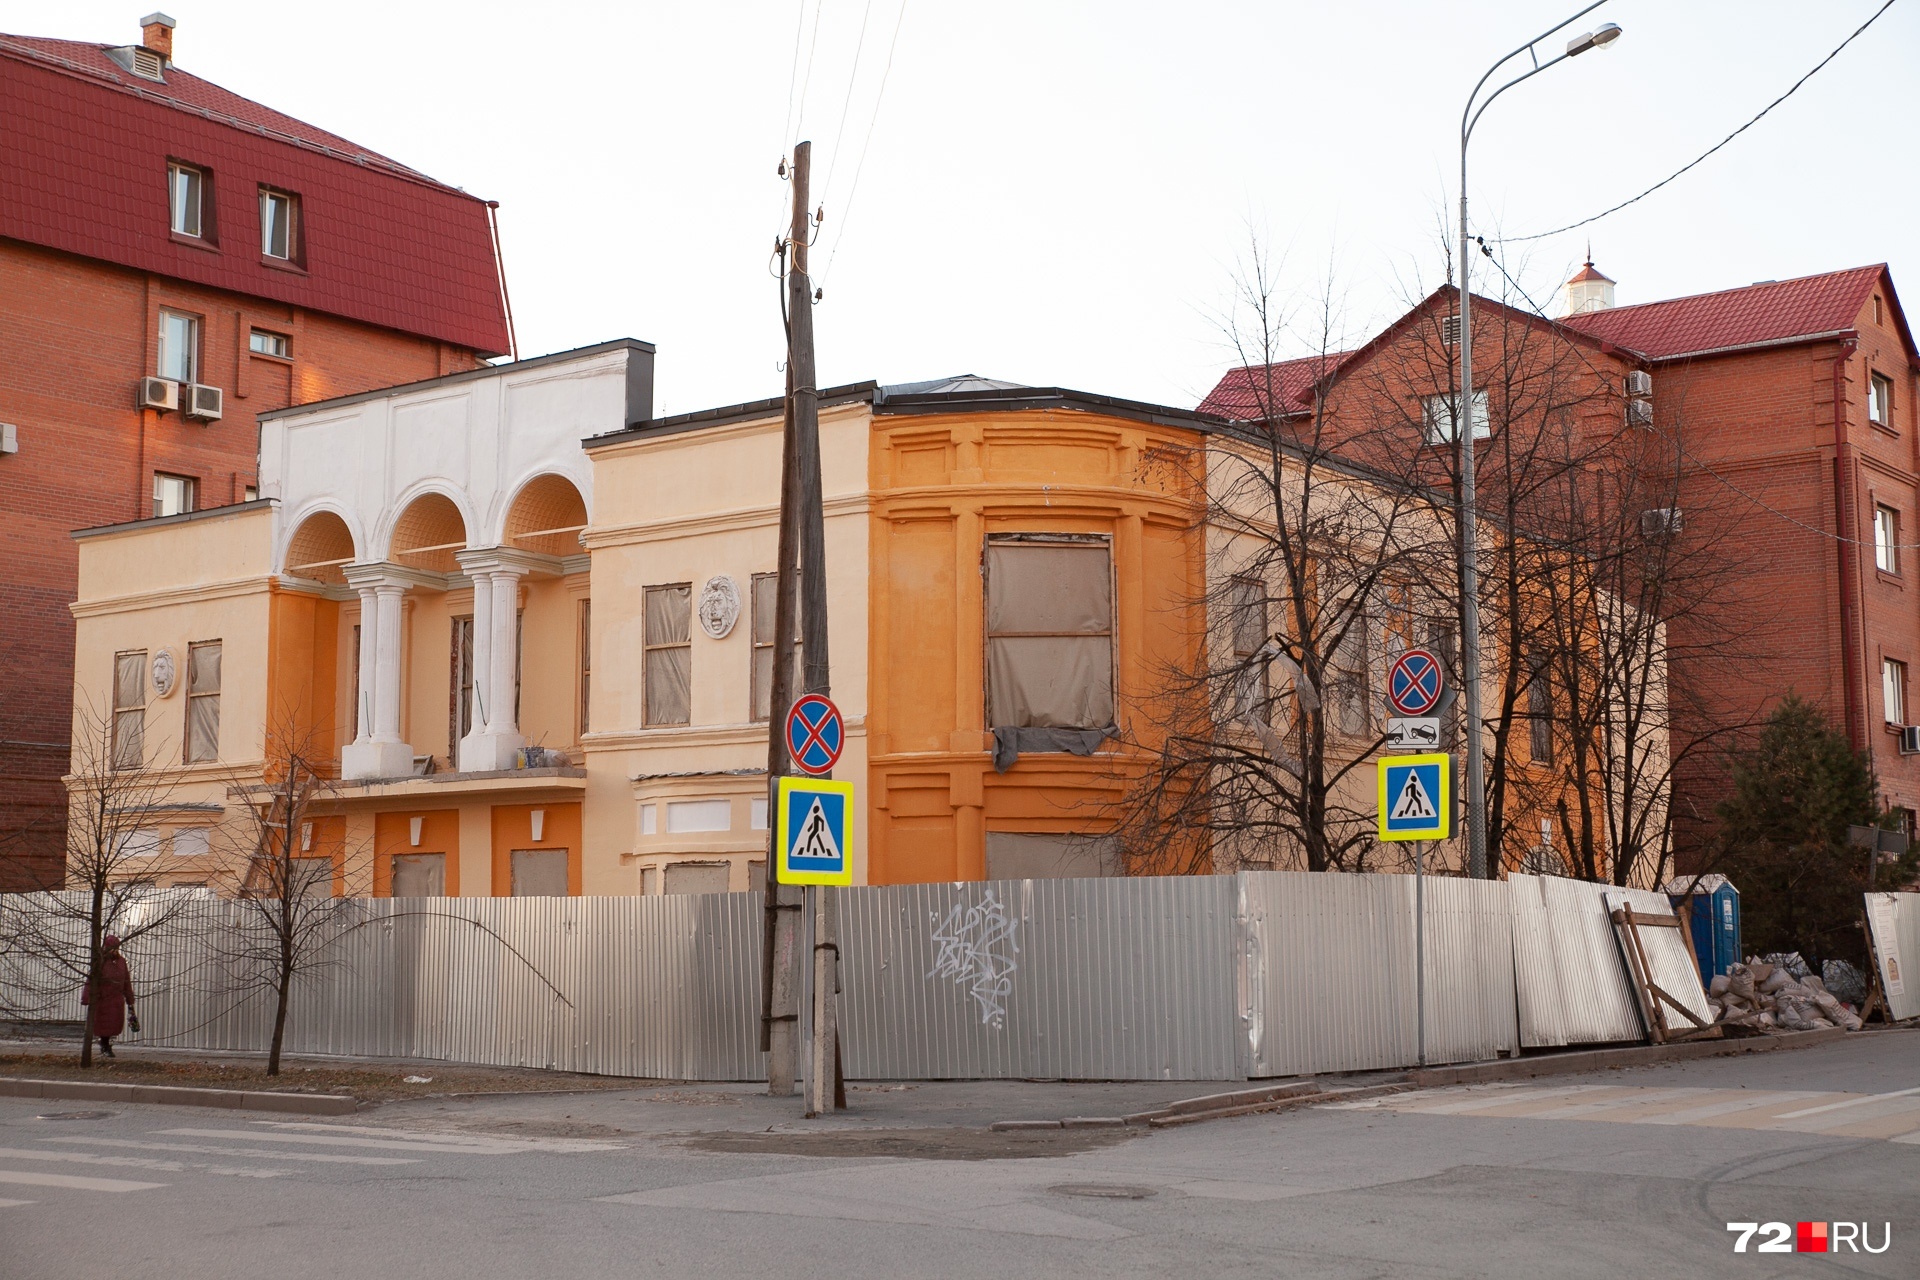 Дом городского архитектора Константина Чакина на улице Семакова тоже решили покрасить в яркие цвета